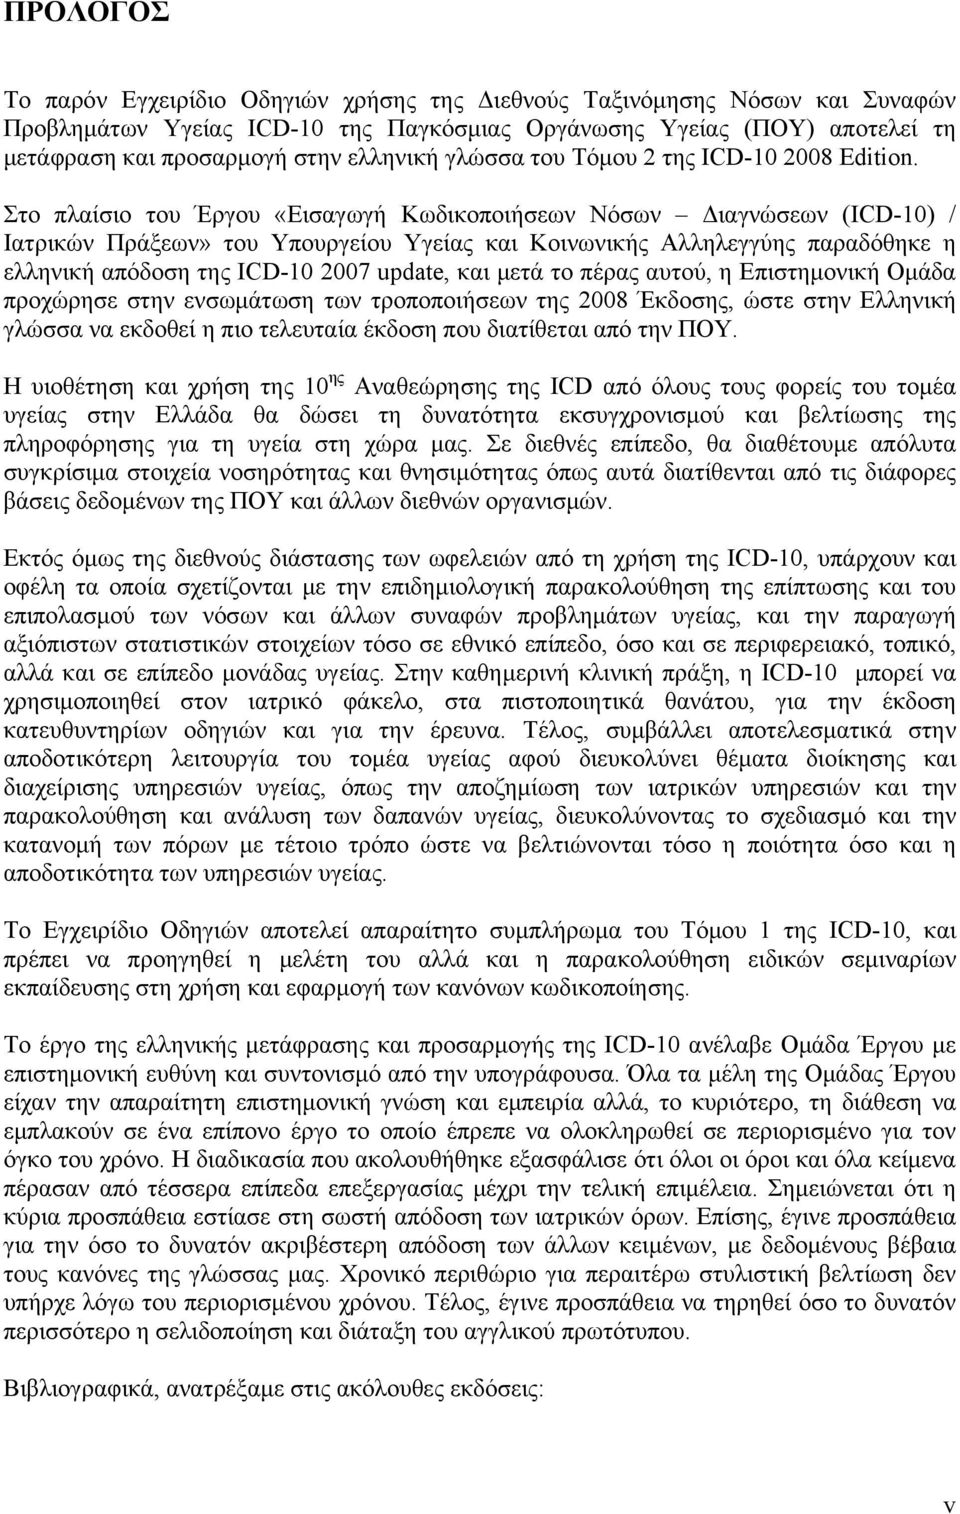 Στο πλαίσιο του Έργου «Εισαγωγή Κωδικοποιήσεων Νόσων Διαγνώσεων (ICD-10) / Ιατρικών Πράξεων» του Υπουργείου Υγείας και Κοινωνικής Αλληλεγγύης παραδόθηκε η ελληνική απόδοση της ICD-10 2007 update, και